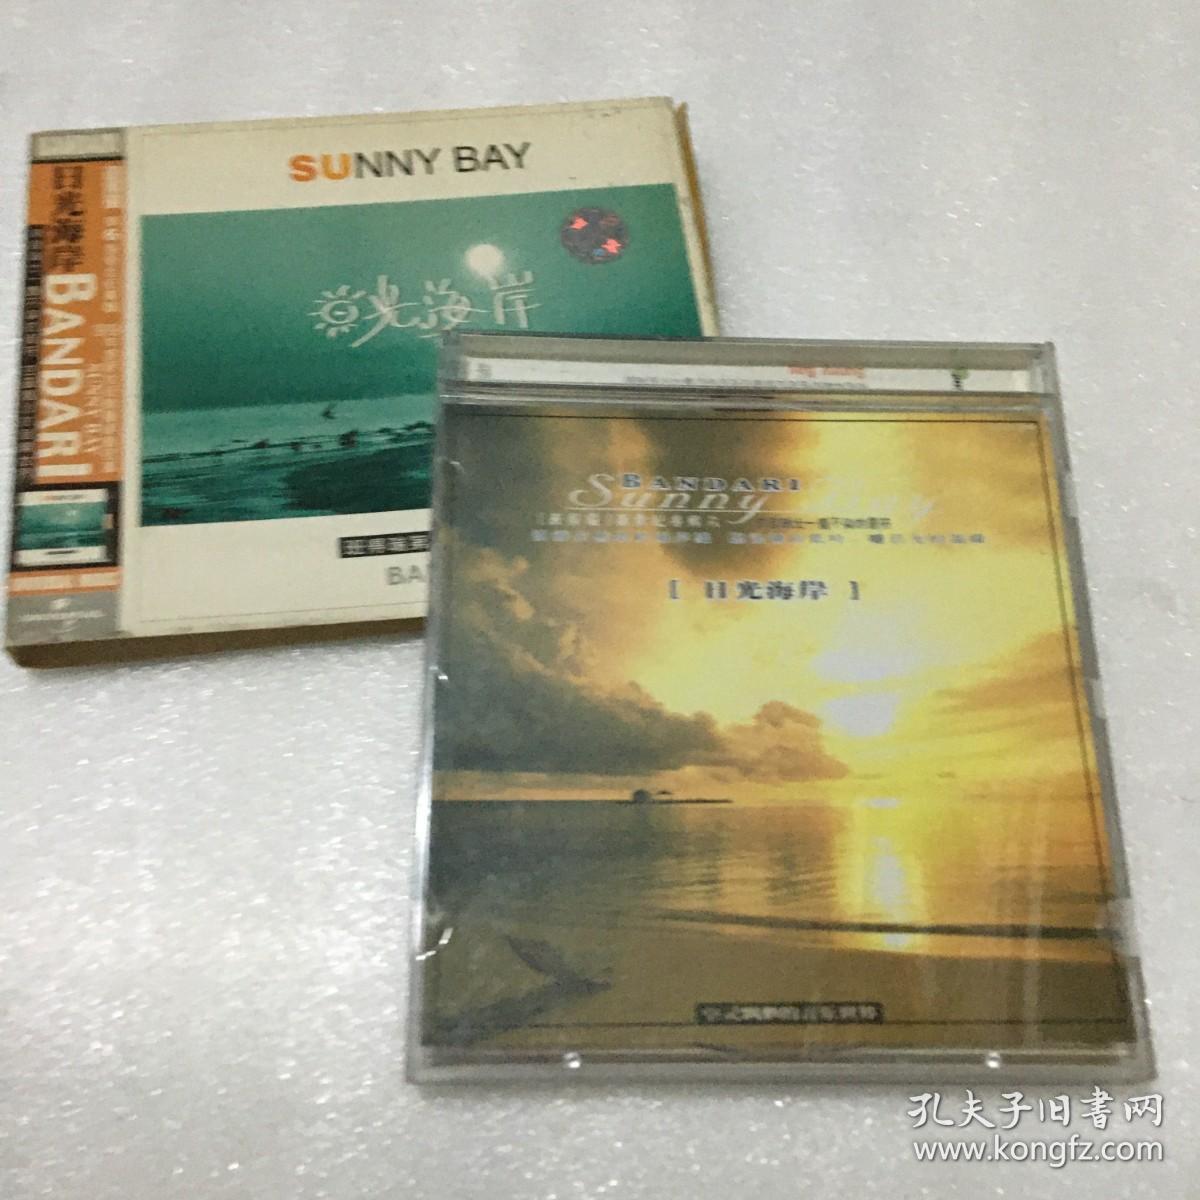 日光海岸 班德瑞第6张新世纪专辑 —— CD光盘